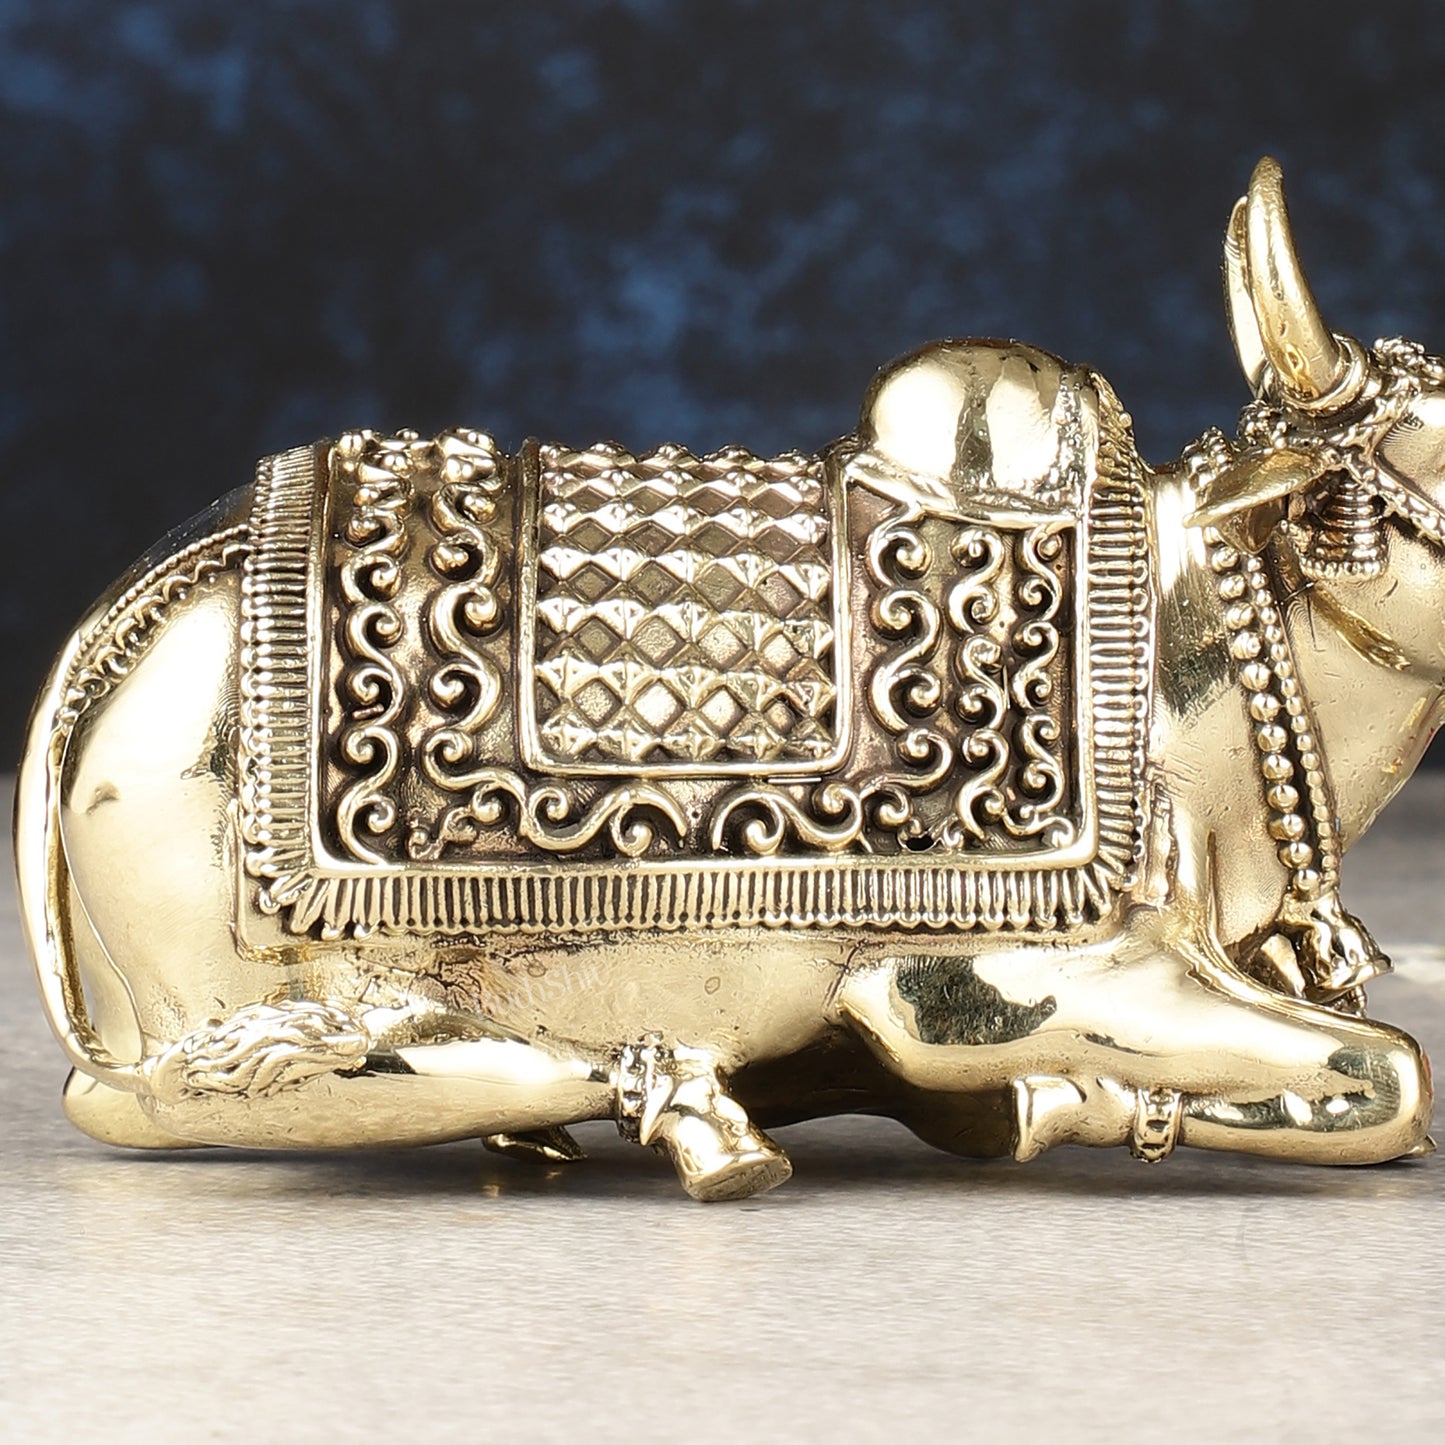 Brass Superfine Nandi Idol - 5.5"